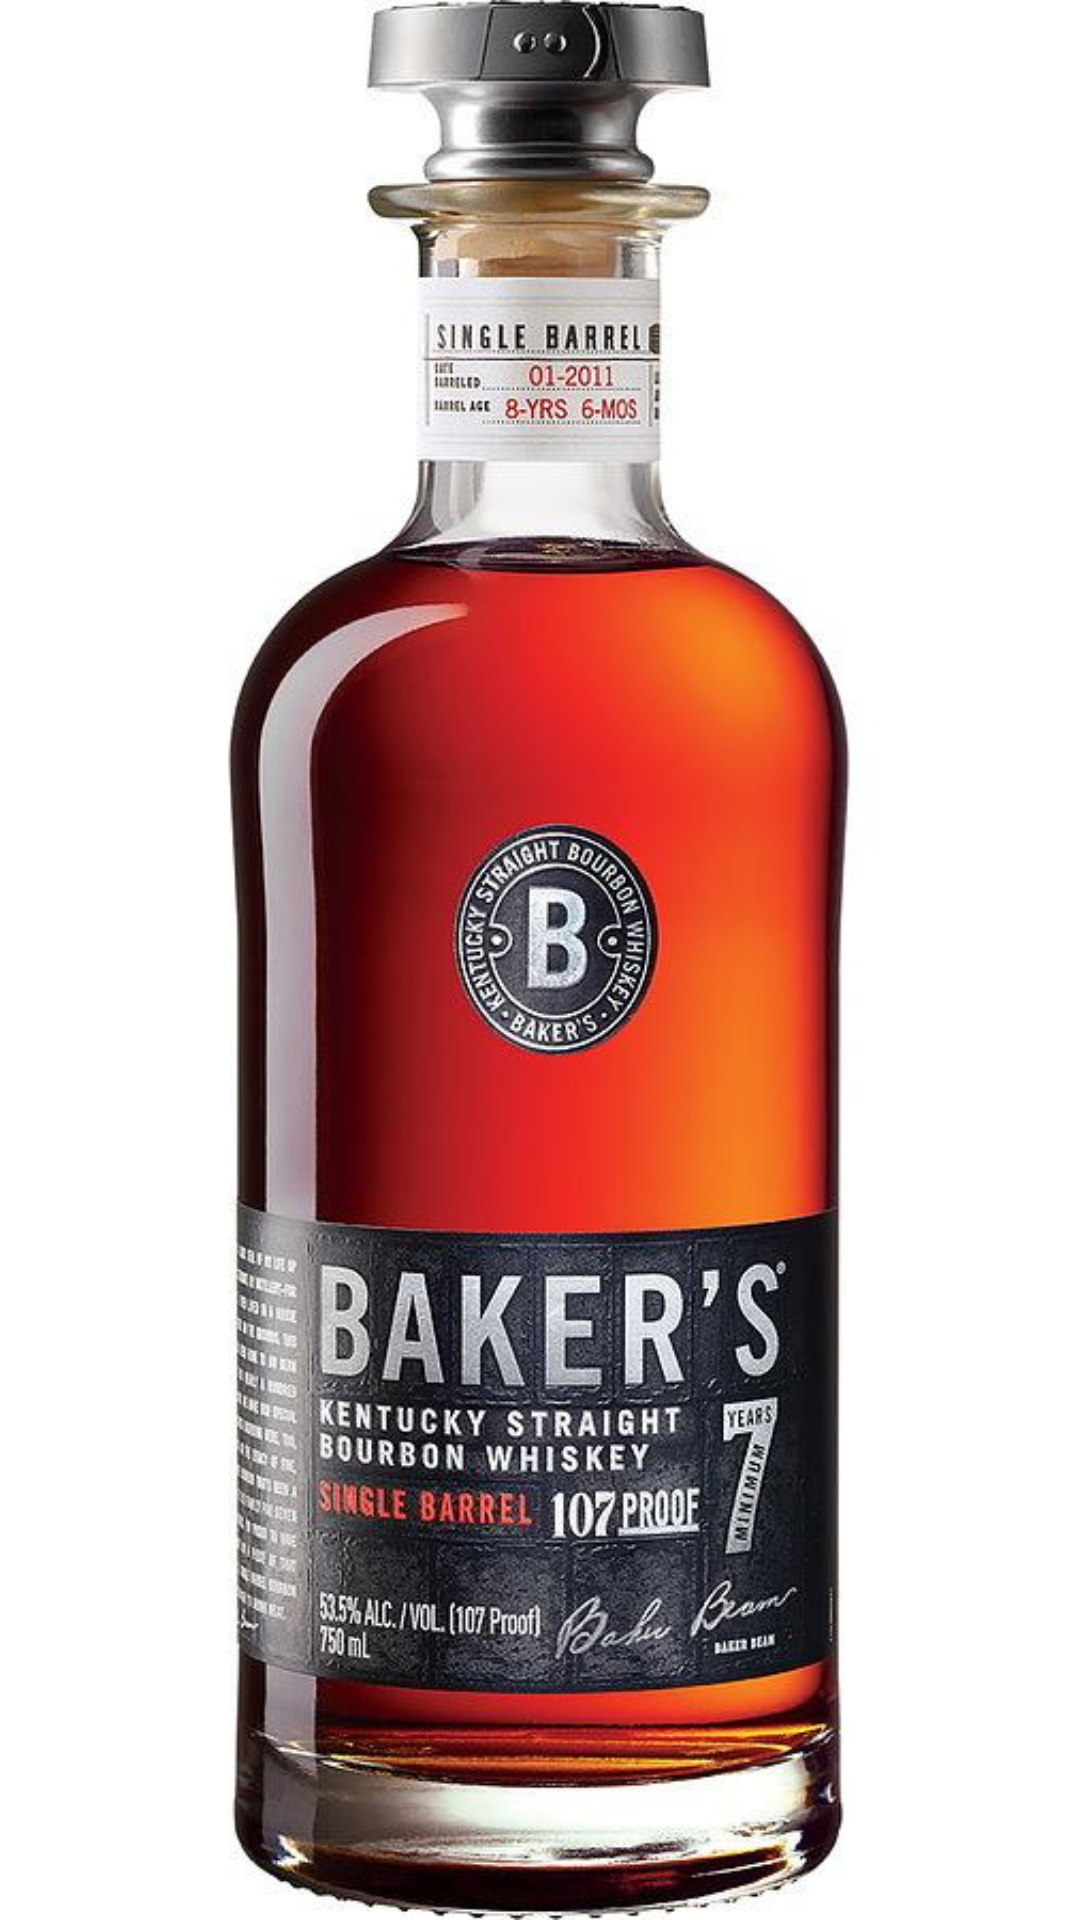 Baker's Bourbon 7 Year Old Single Barrel 107 Proof Kentucky